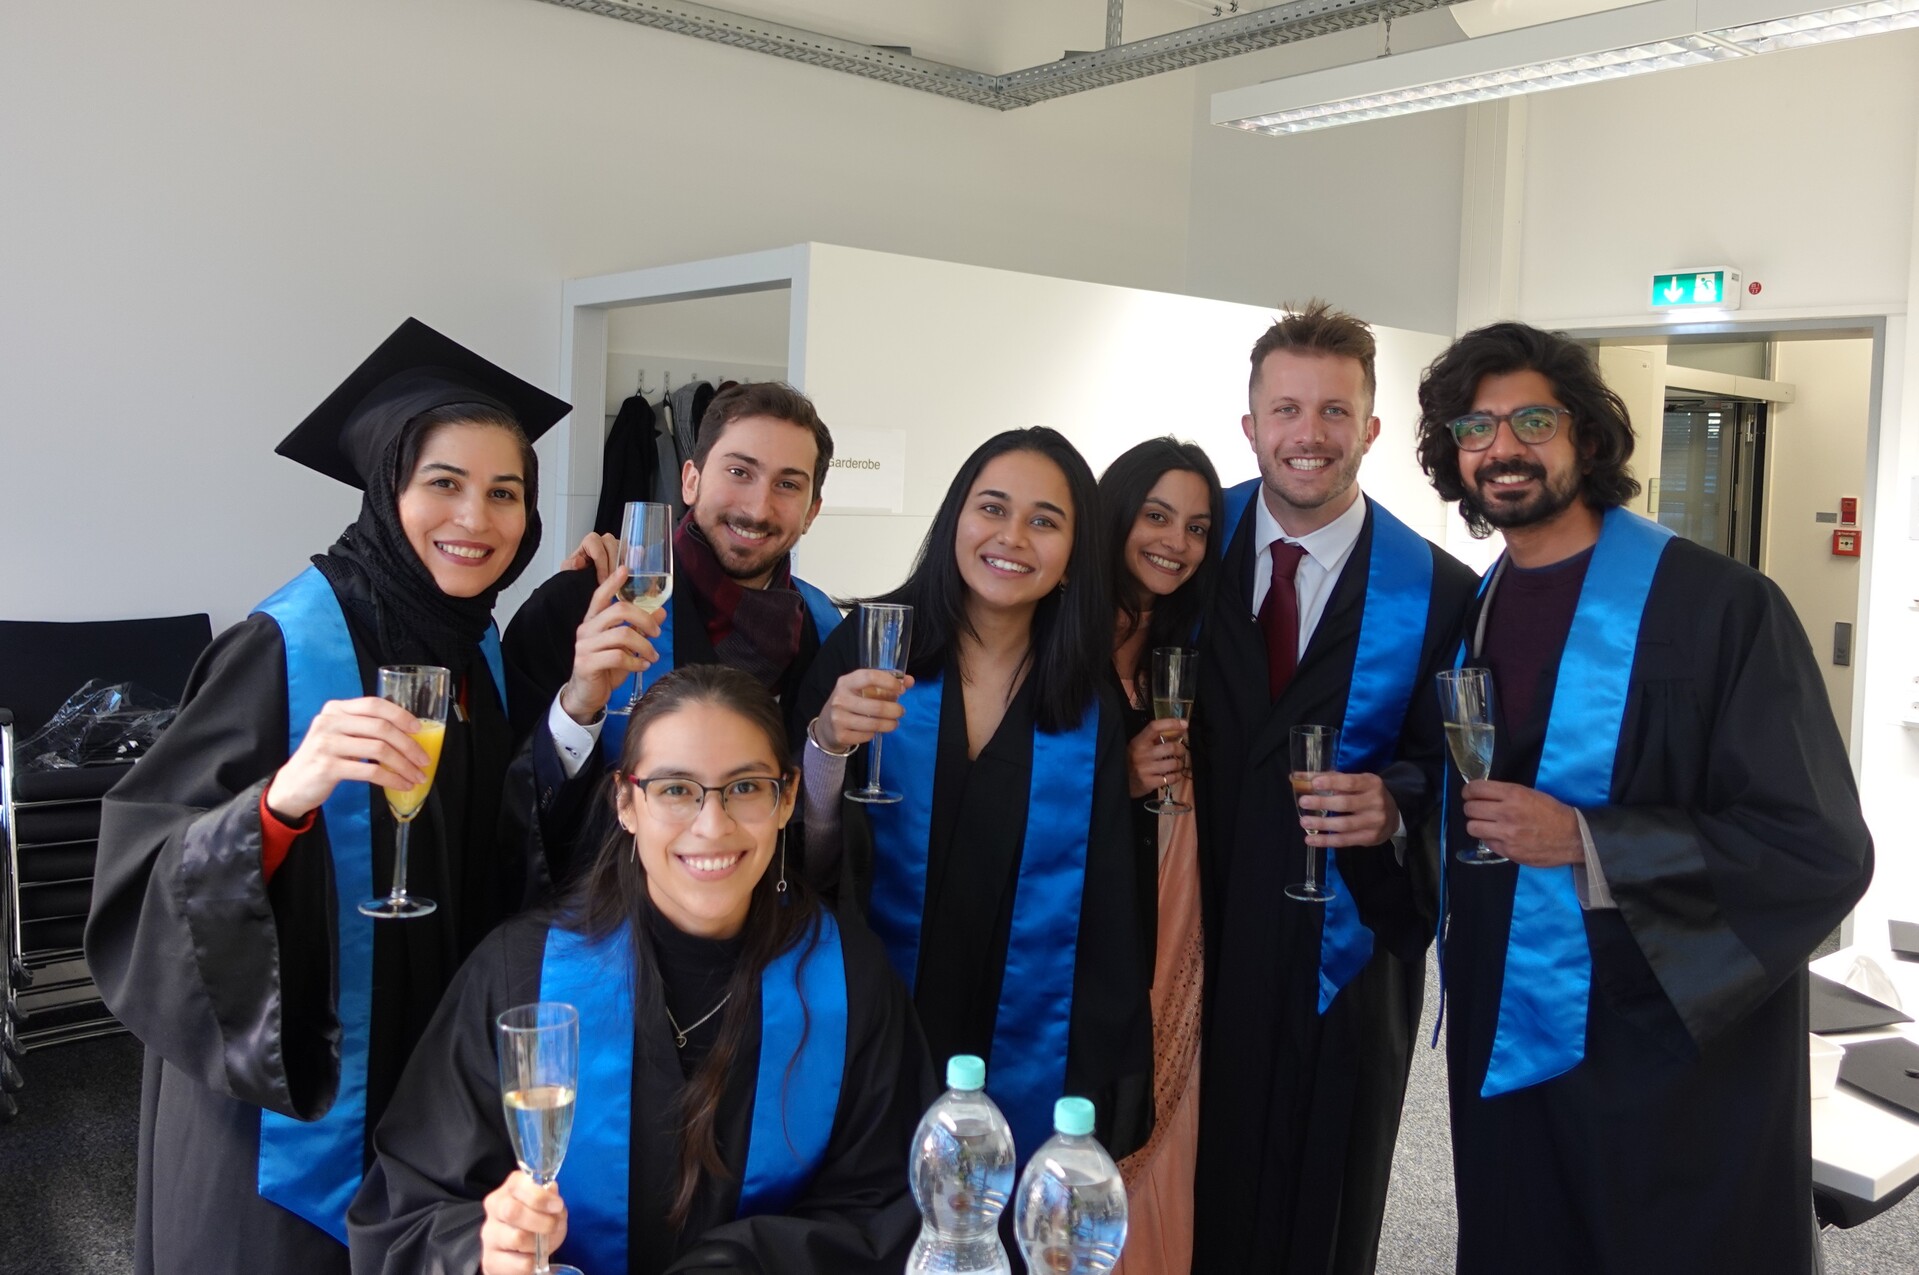 New master graduates – Congratulations!